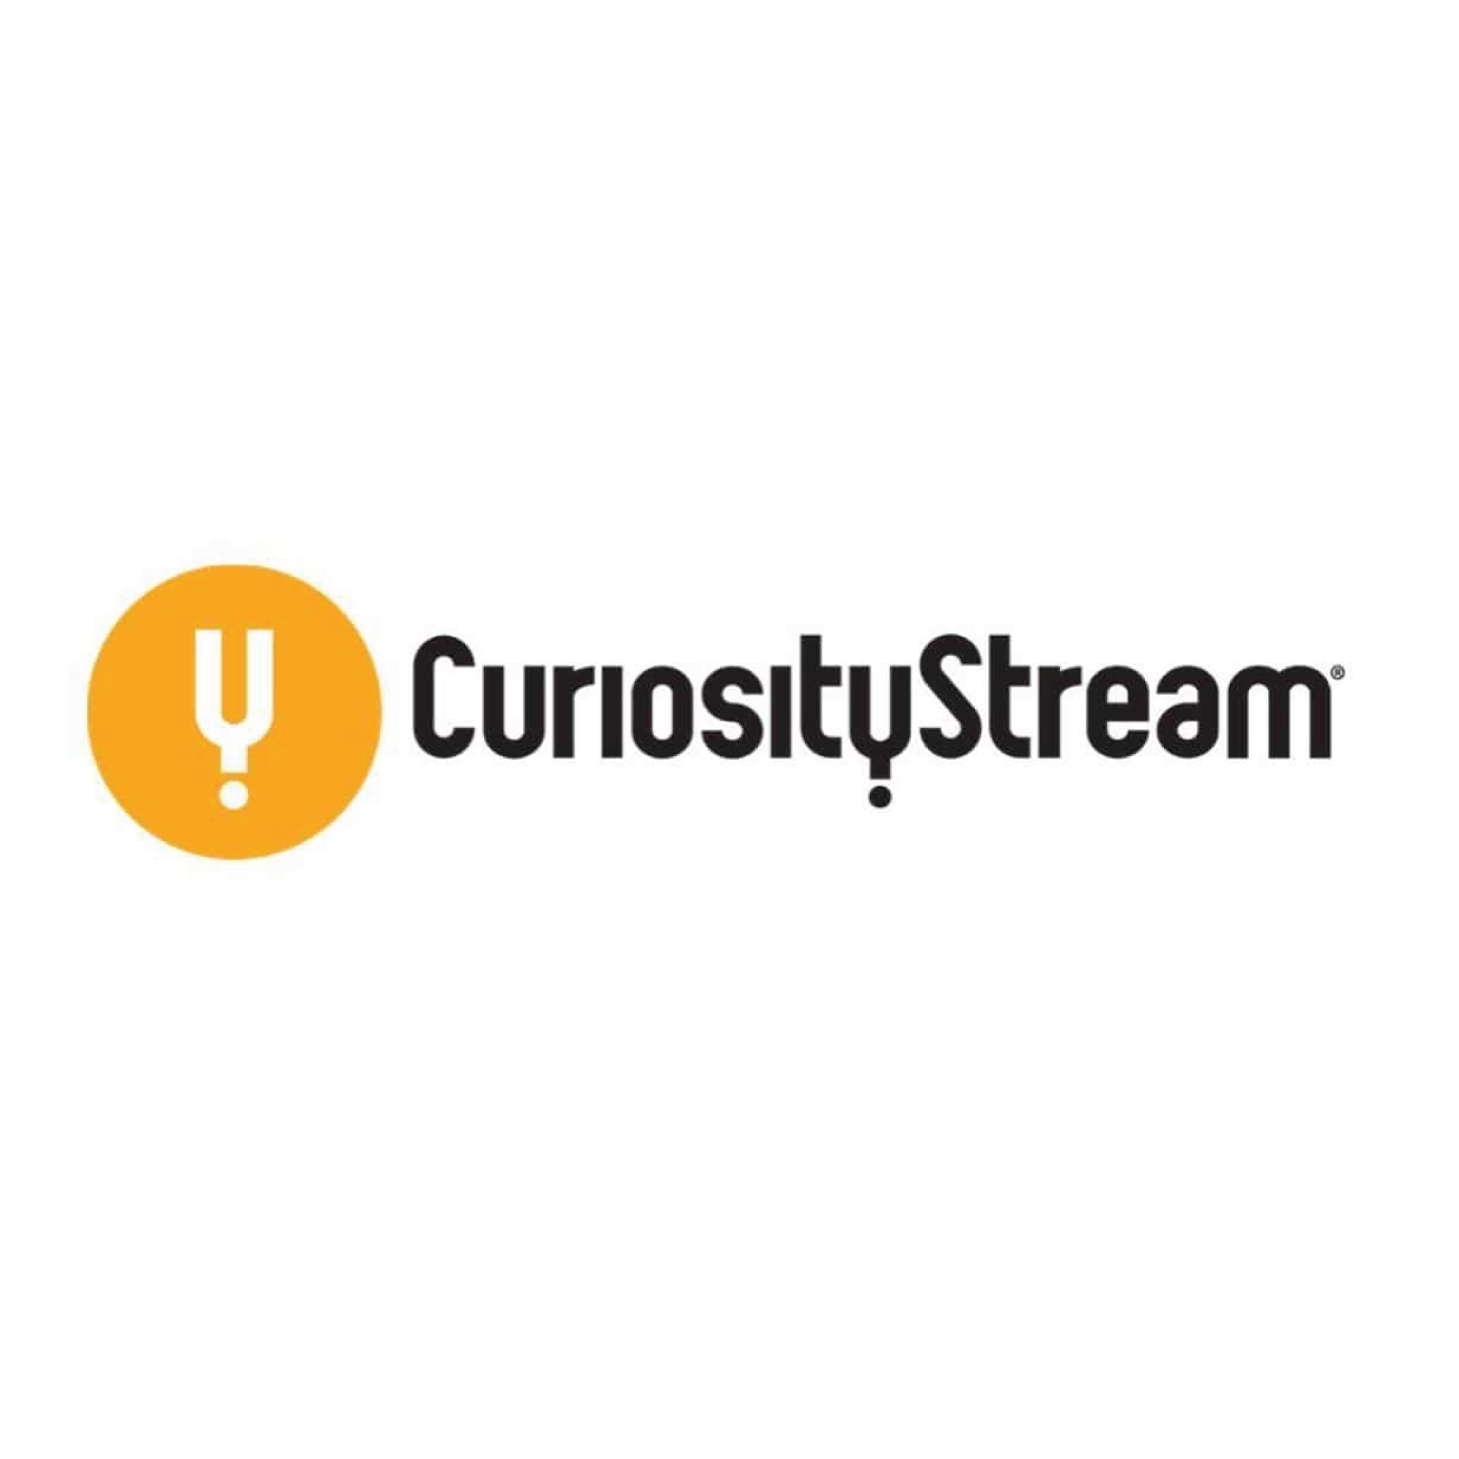 CuriosityStream クーポン 